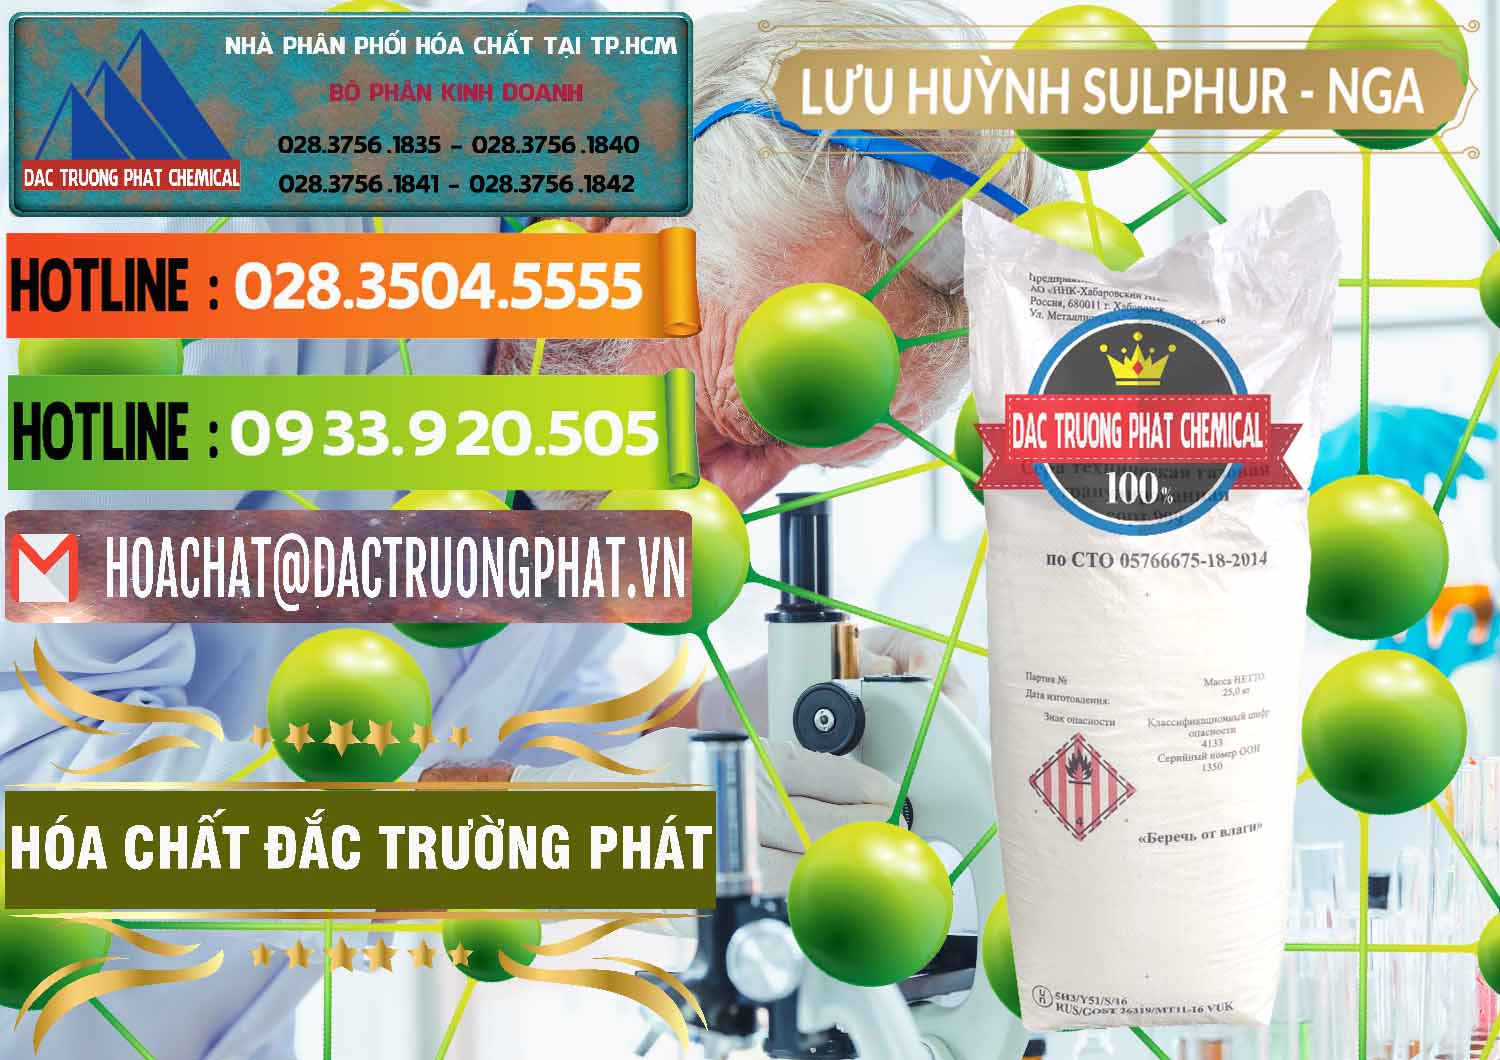 Cty chuyên kinh doanh và bán Lưu huỳnh Hạt - Sulfur Nga Russia - 0200 - Cung cấp & kinh doanh hóa chất tại TP.HCM - cungcaphoachat.com.vn